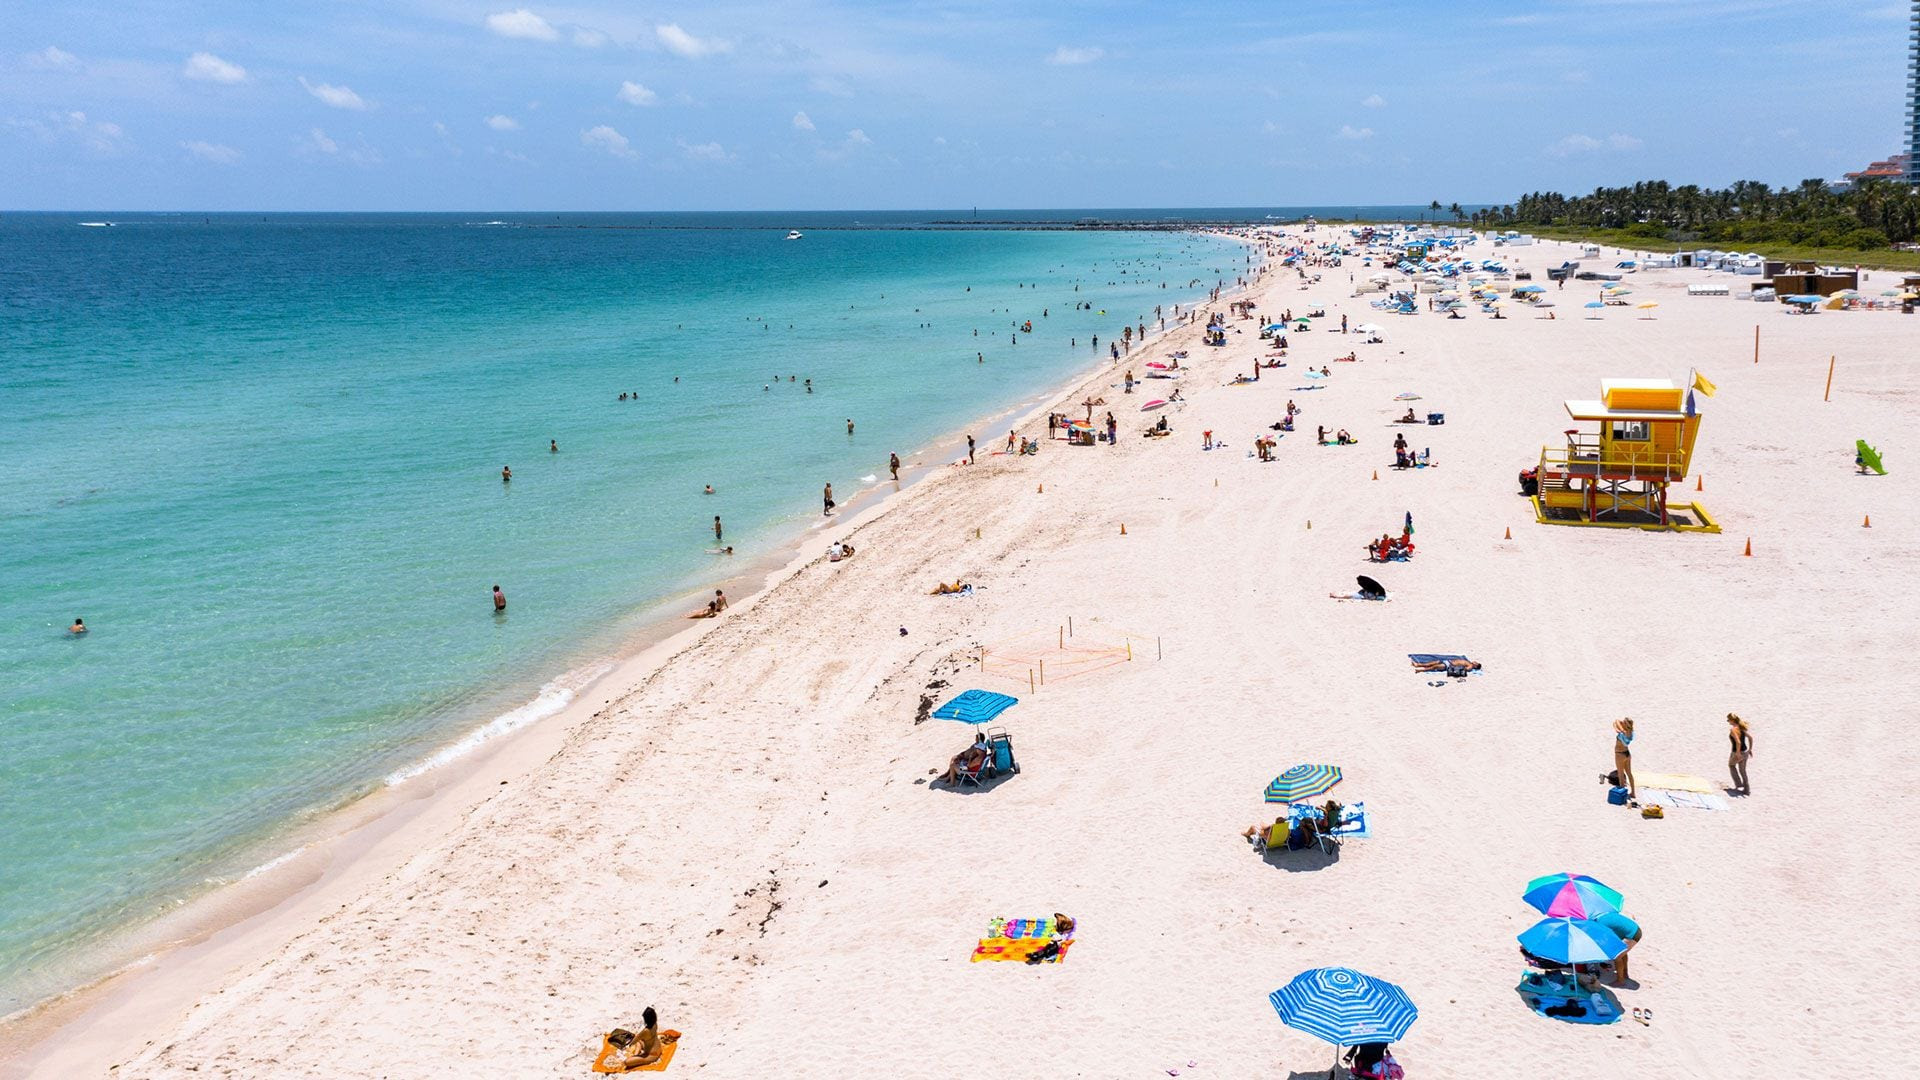 Menores impuestos, un clima agradable y atractivos como sus lujosas playas están atrayendo a mas estadounidenses a vivir en Florida. (Getty)